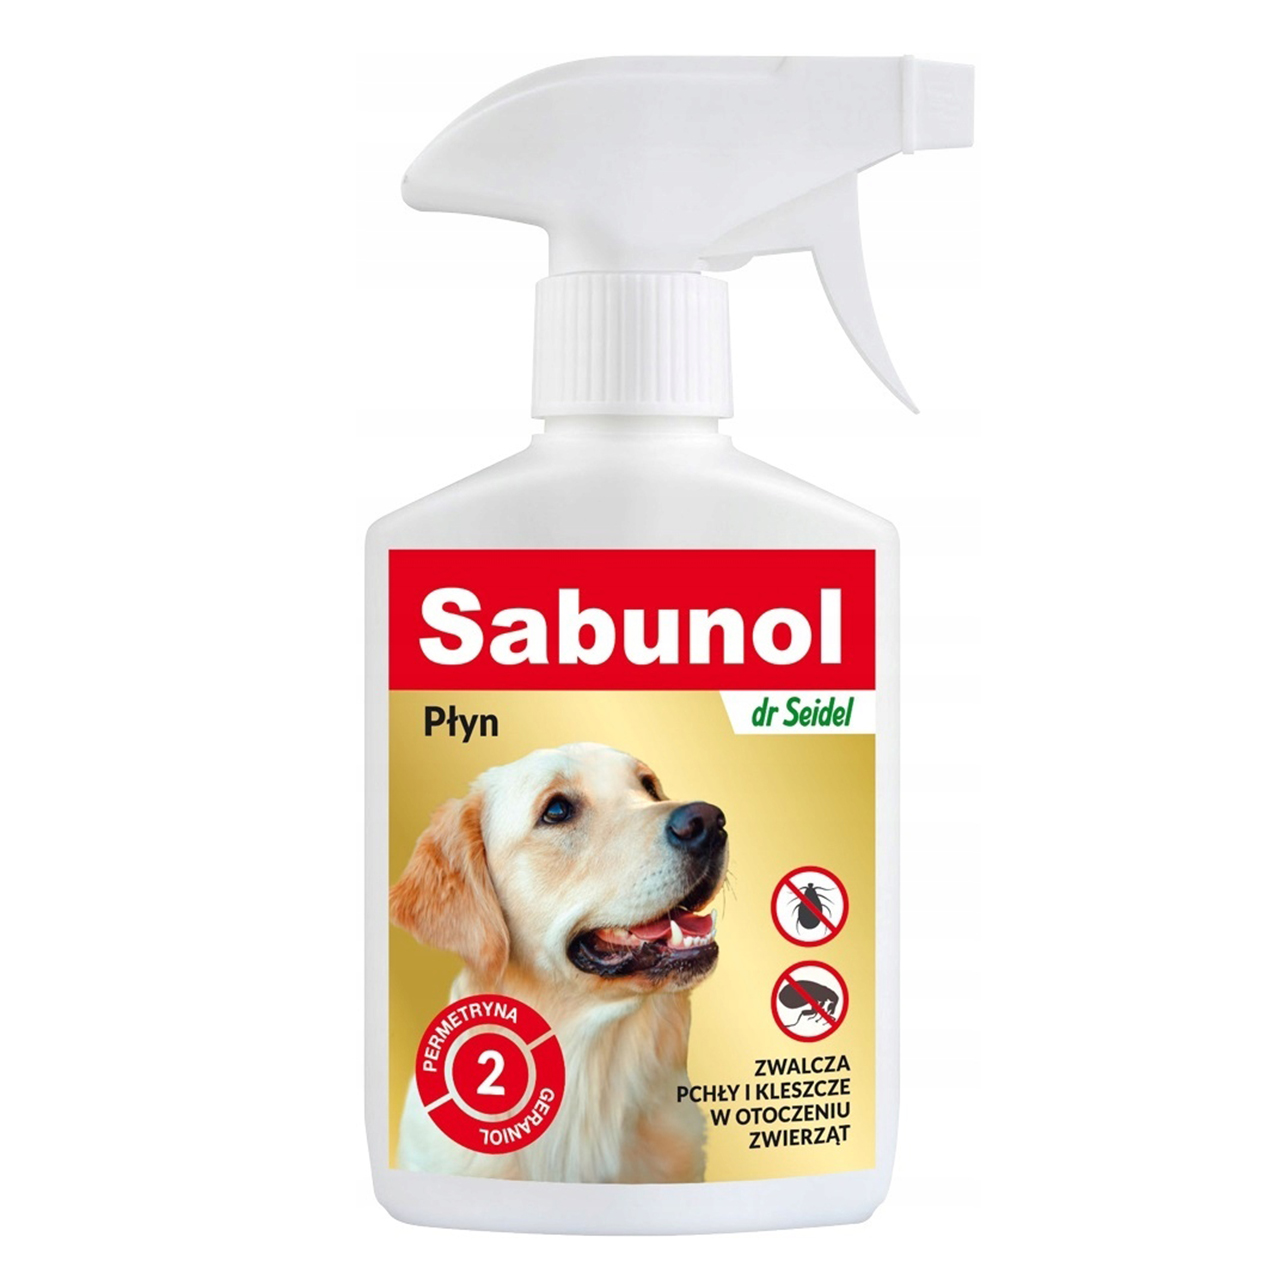 sabunol szampon dla psa zwalcza pchły i kleszcze opinie